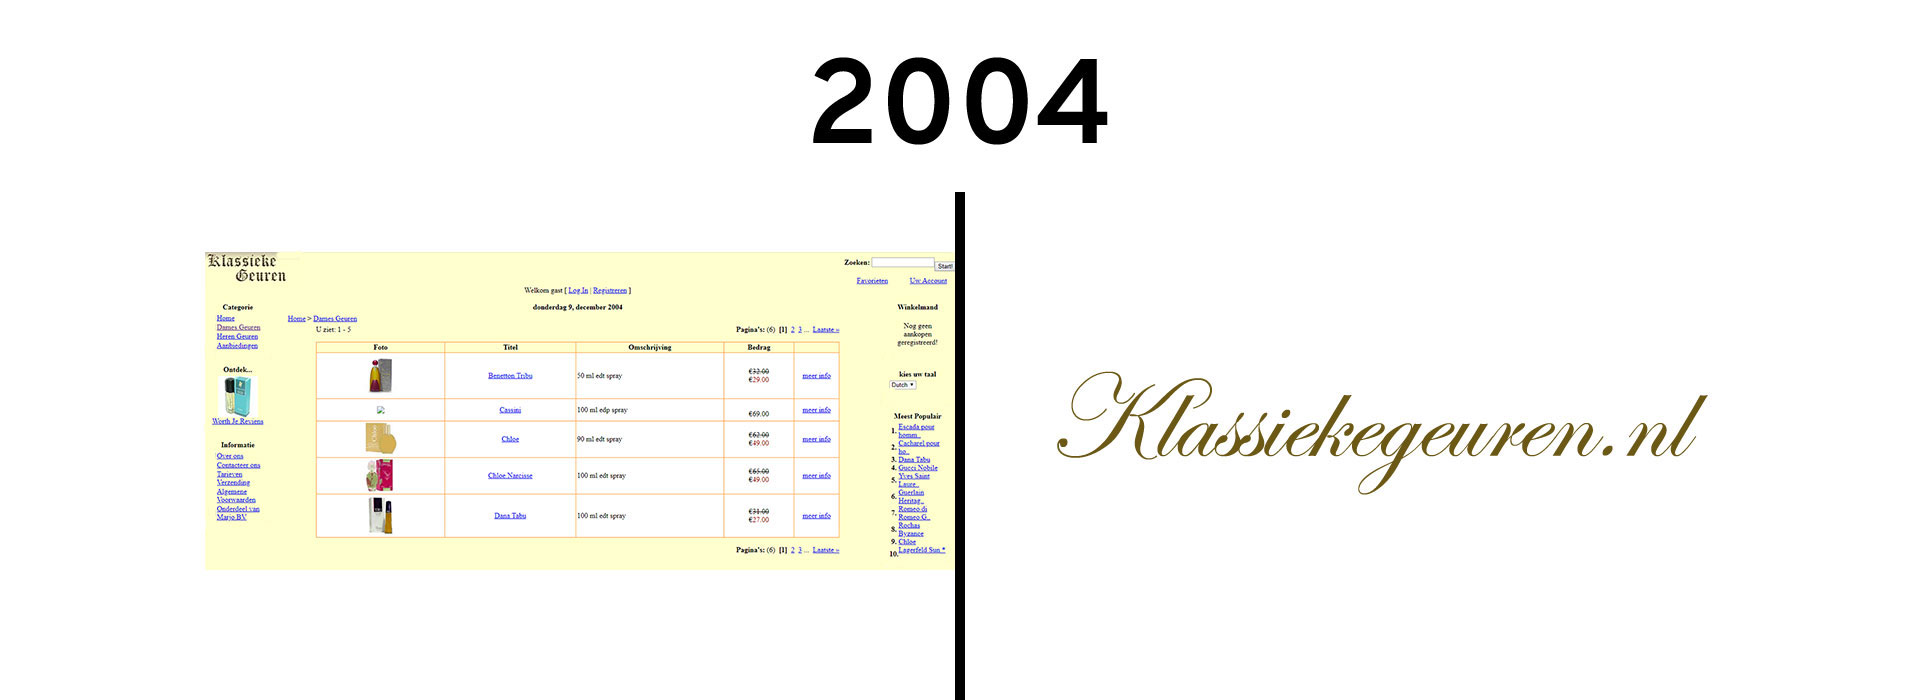 2004 een echte webshop met voornamelijk klassieke parfums